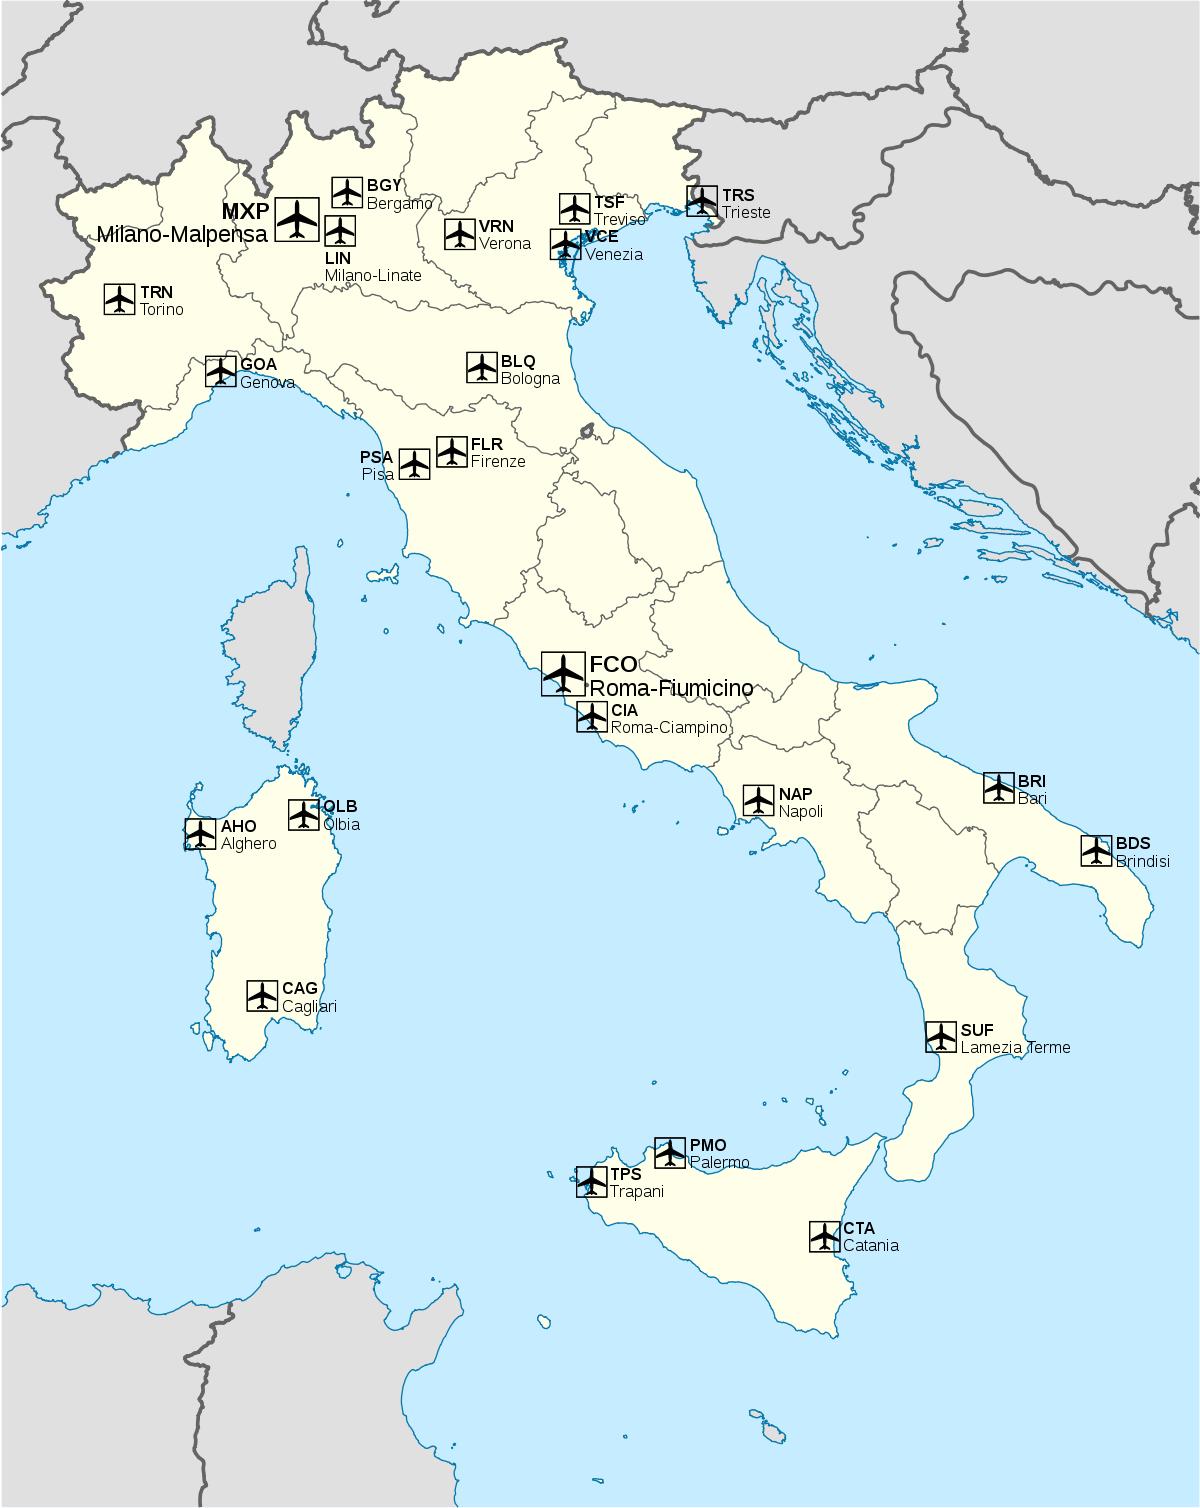 イタリアの空港地図 地図のイタリアを示す西国際空港及び大阪国際空港の南欧諸国 ヨーロッパ